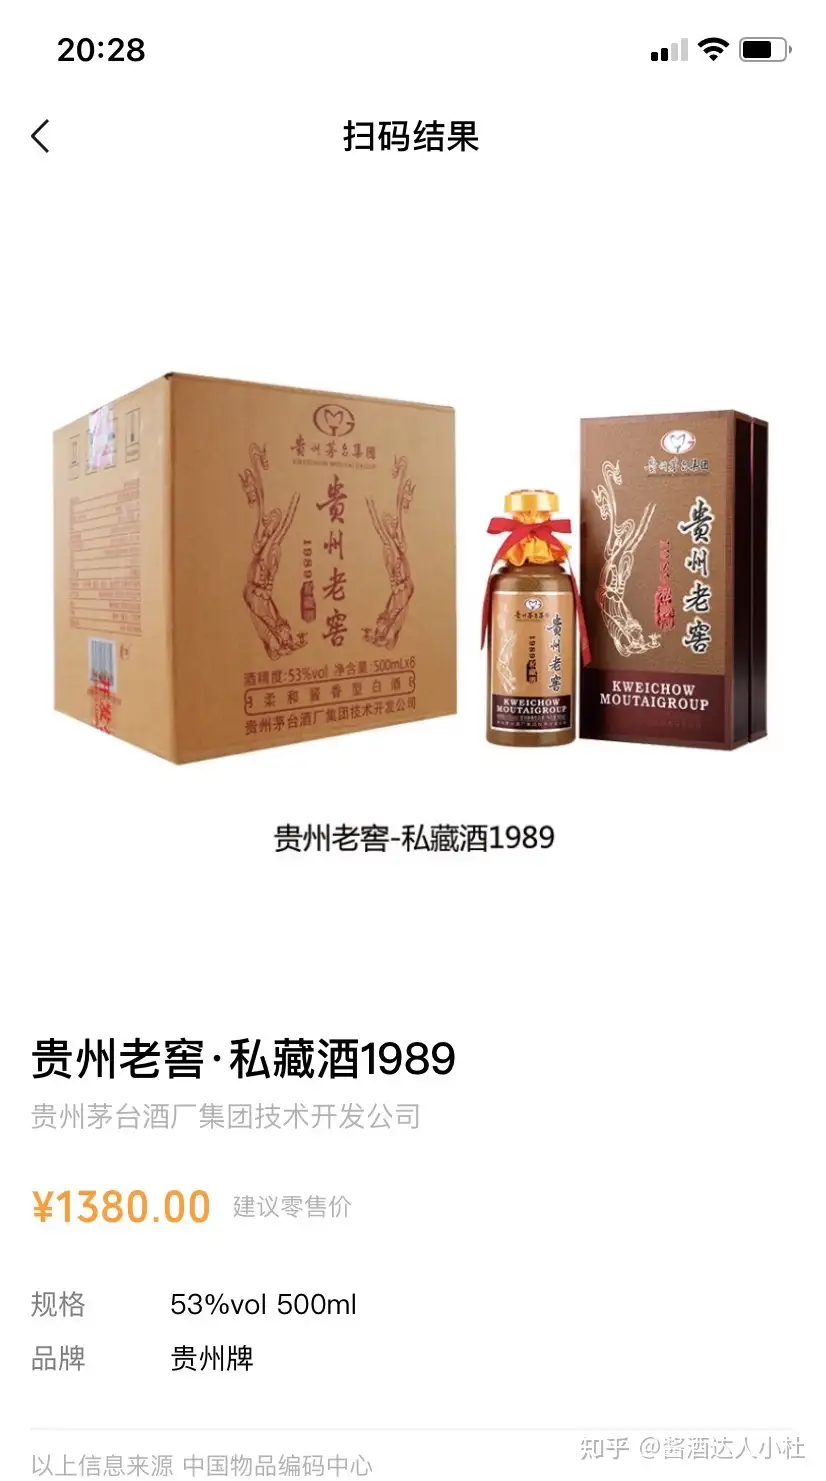 貴州茅台酒私藏中国白酒| www.ptdexam.com